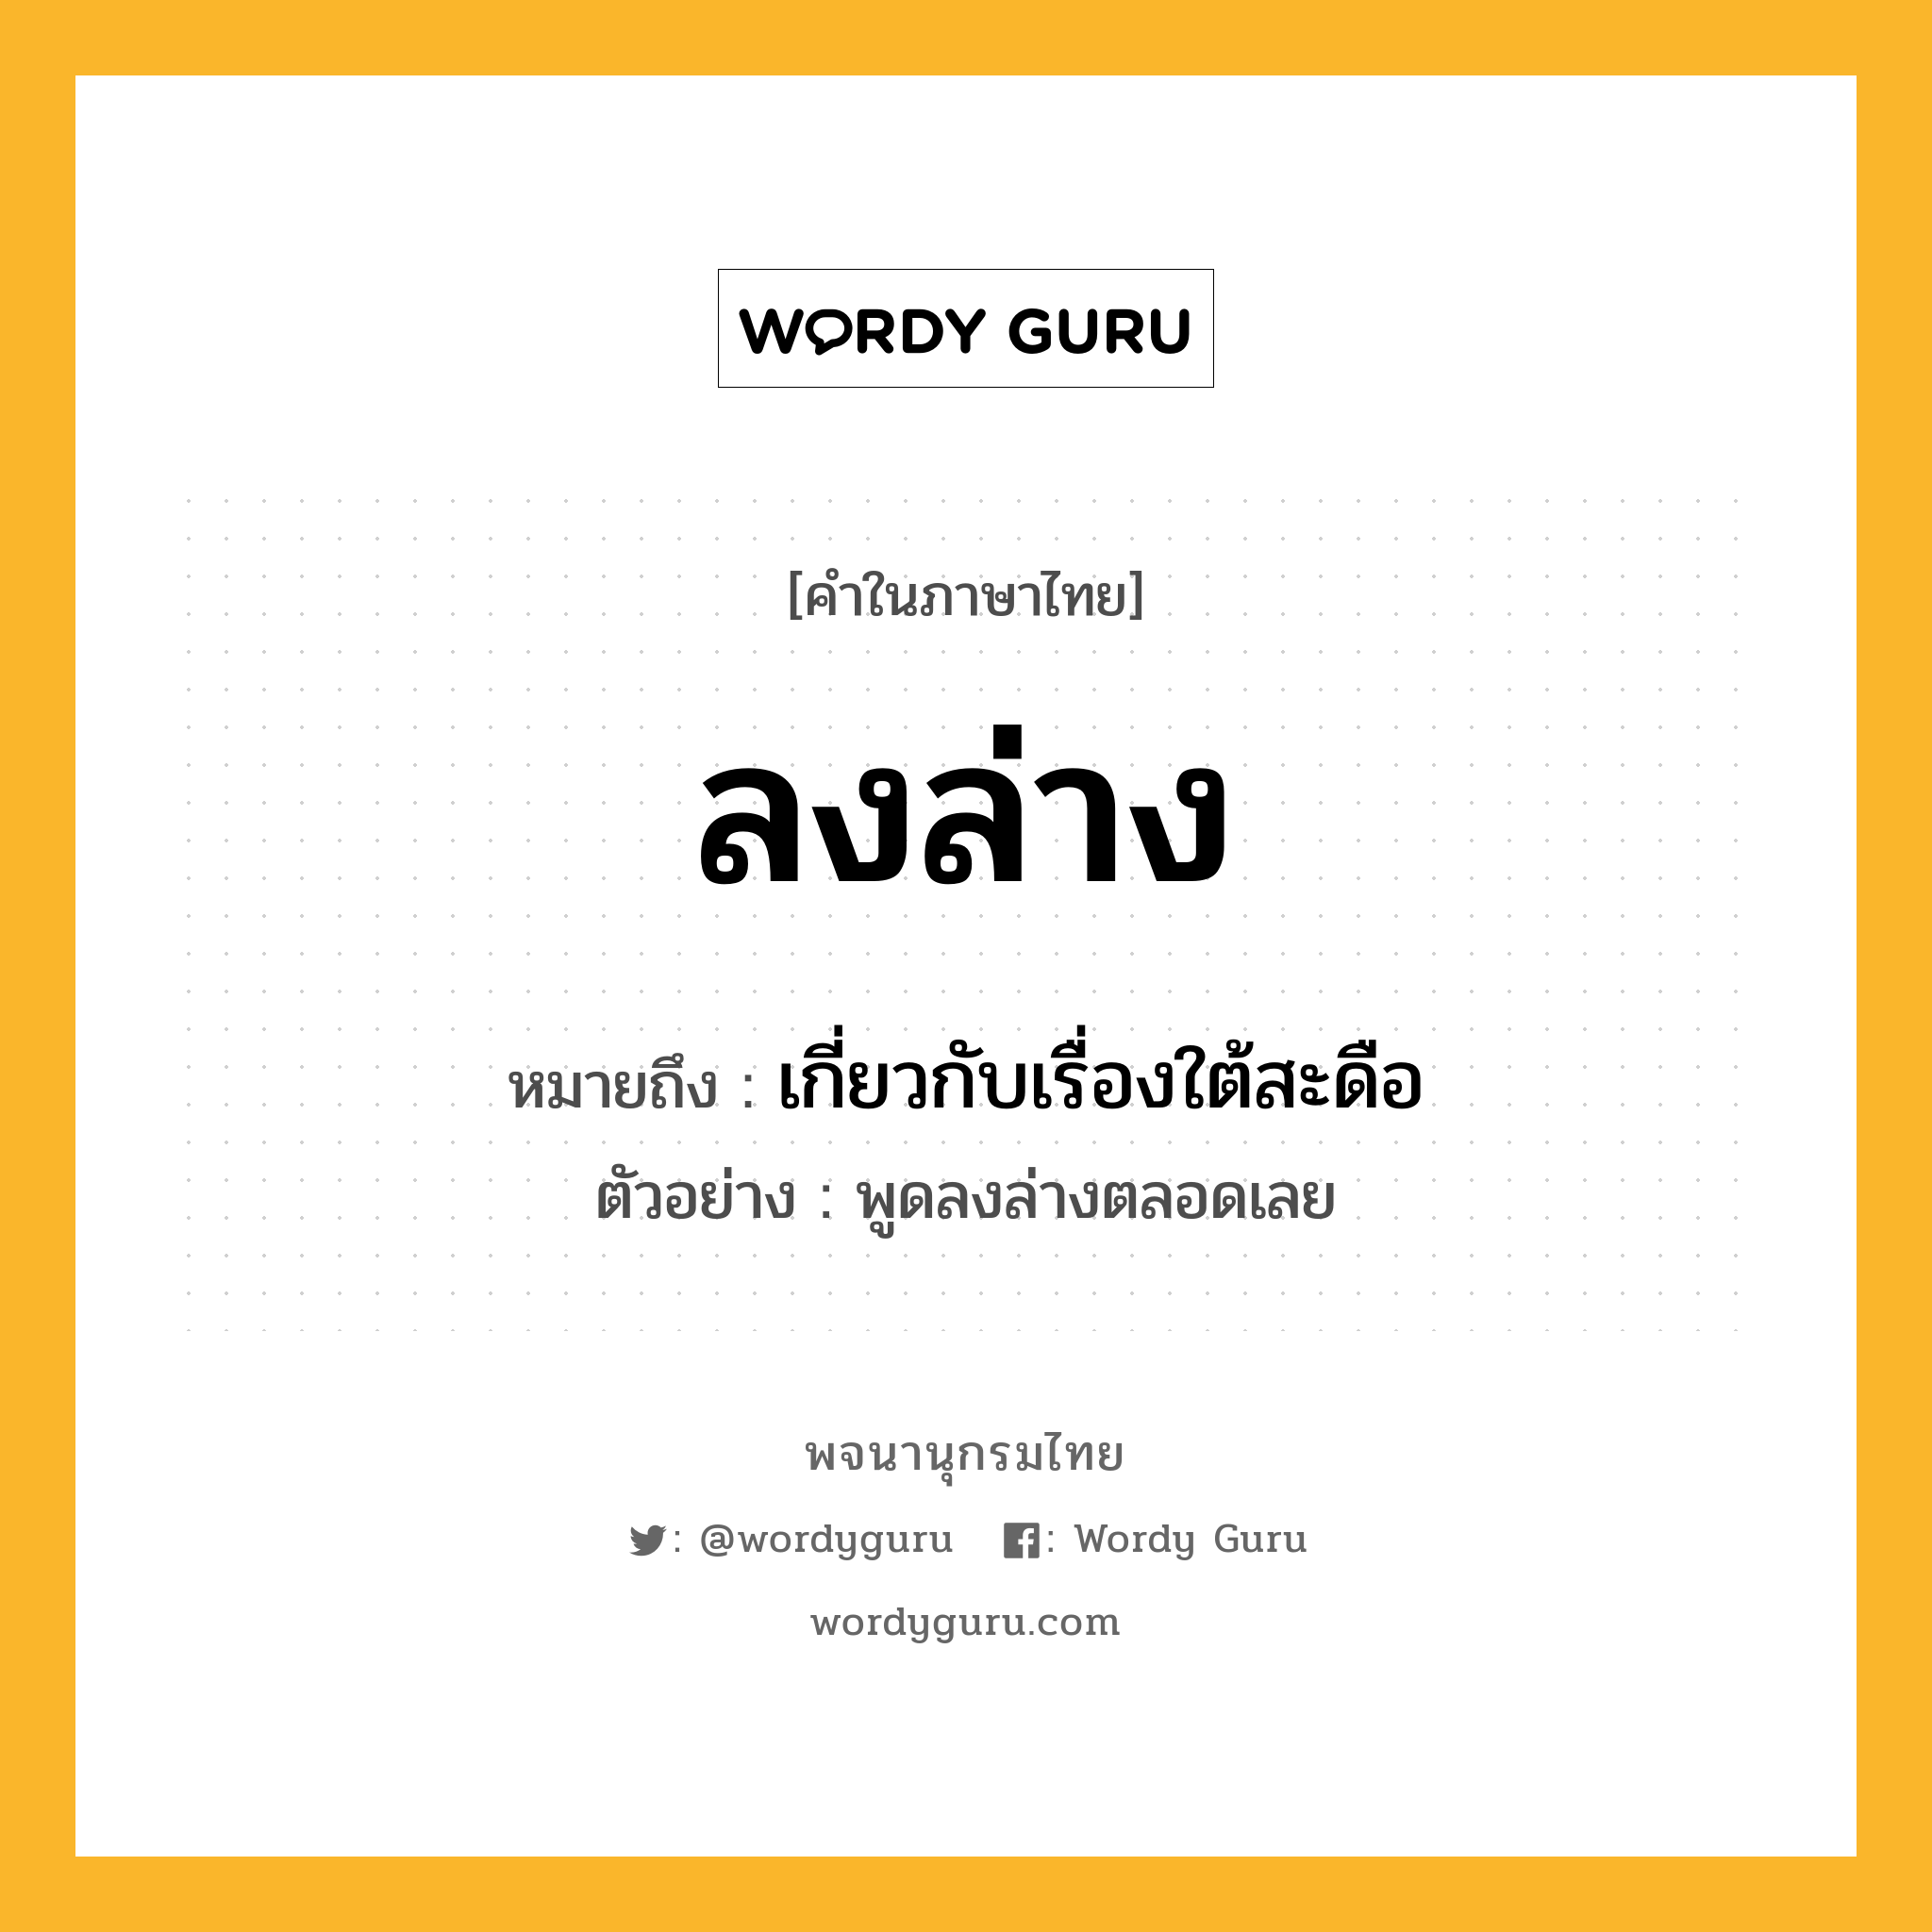 ลงล่าง ความหมาย หมายถึงอะไร?, คำในภาษาไทย ลงล่าง หมายถึง เกี่ยวกับเรื่องใต้สะดือ ประเภท สล ตัวอย่าง พูดลงล่างตลอดเลย หมวด สล